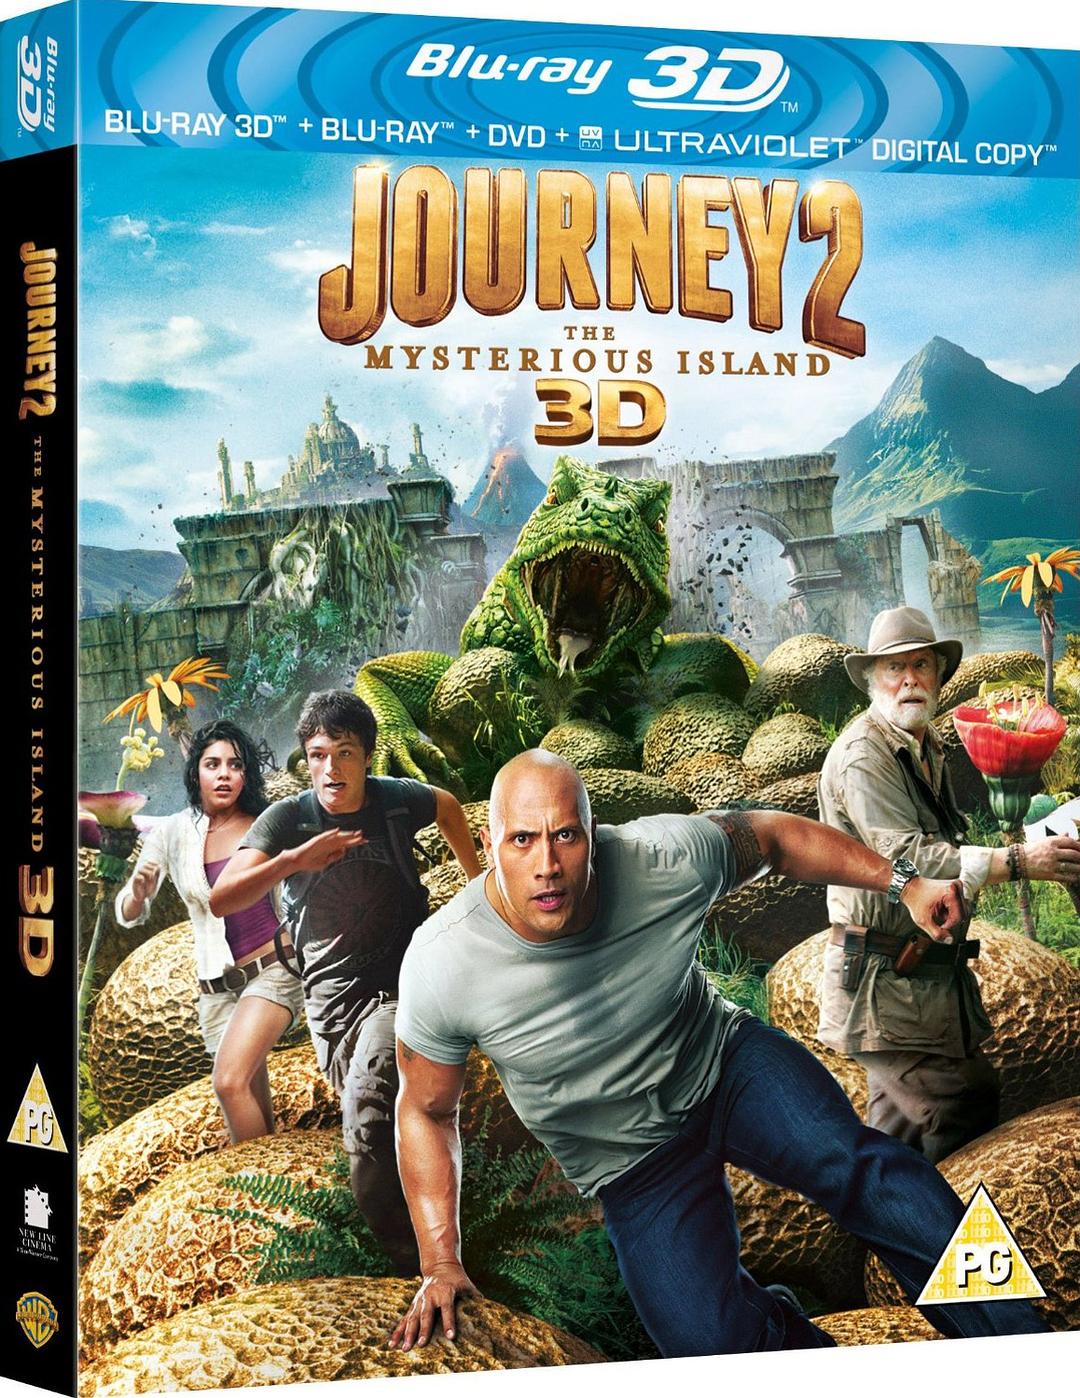 [地心历险记2].Journey.2.The.Mysterious.Island.2012.3D.BluRay.1080p.AVC.DTS-HD.MA.7.1-Pete@HDSky    33.33G-1.jpg